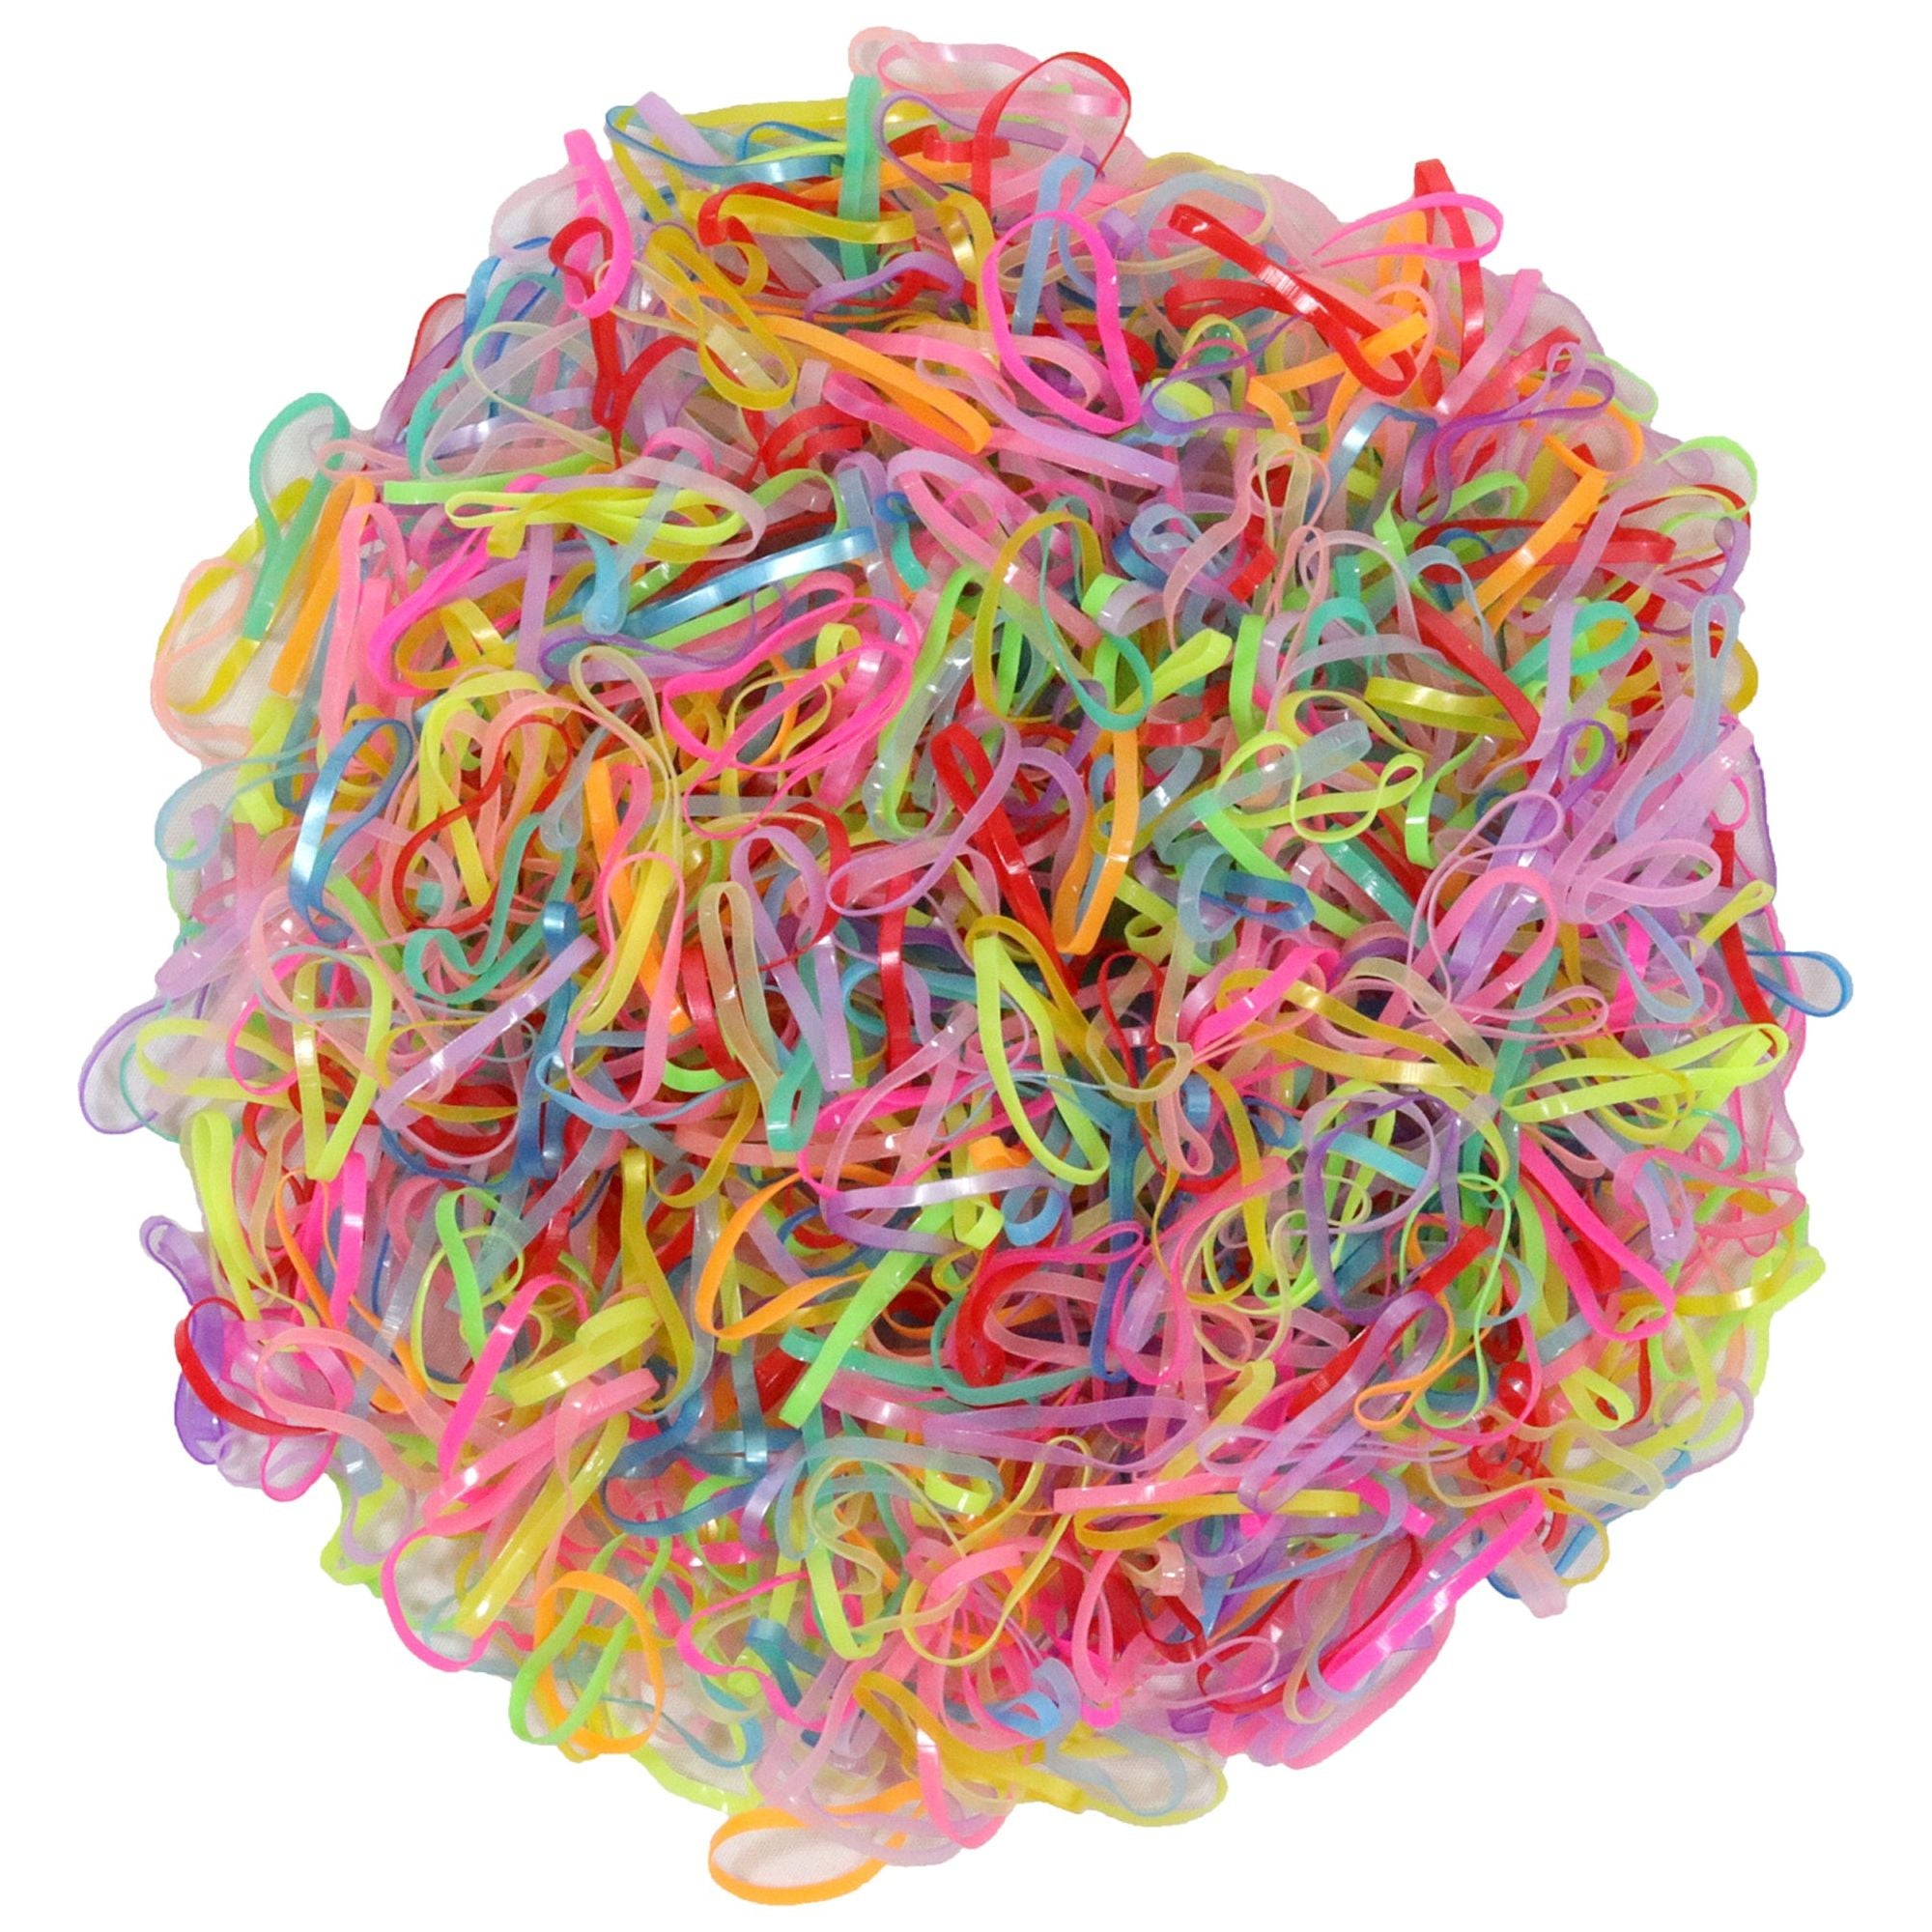 QIOKCKC 900 Tiny Rubber Bands Vibrant Color Mini Hair Ties with 3